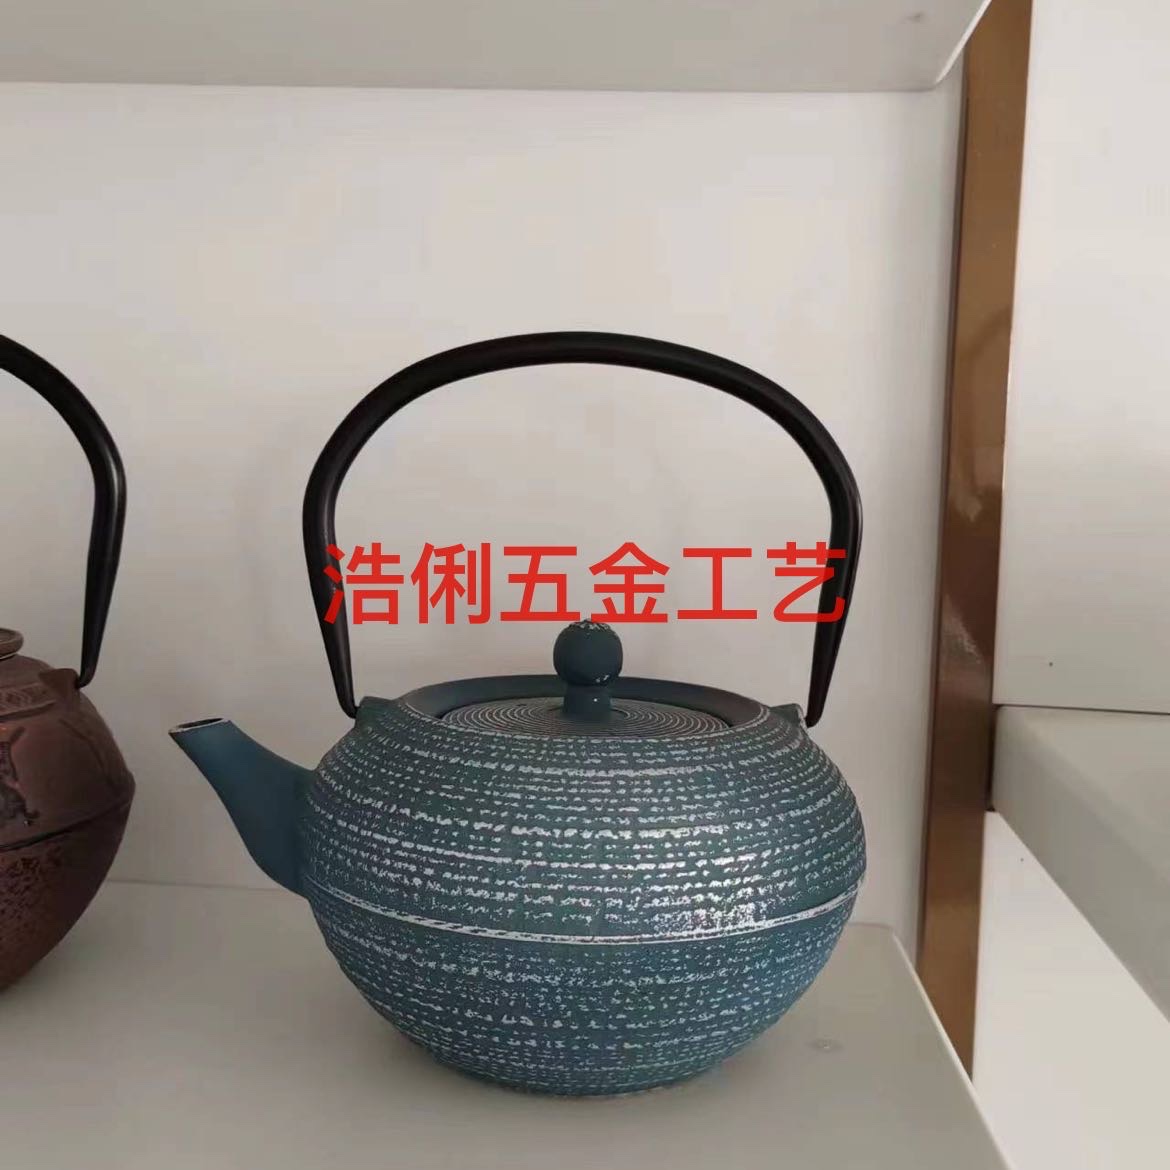 铸铁茶壶/铸铁壶垫/生铁杯细节图